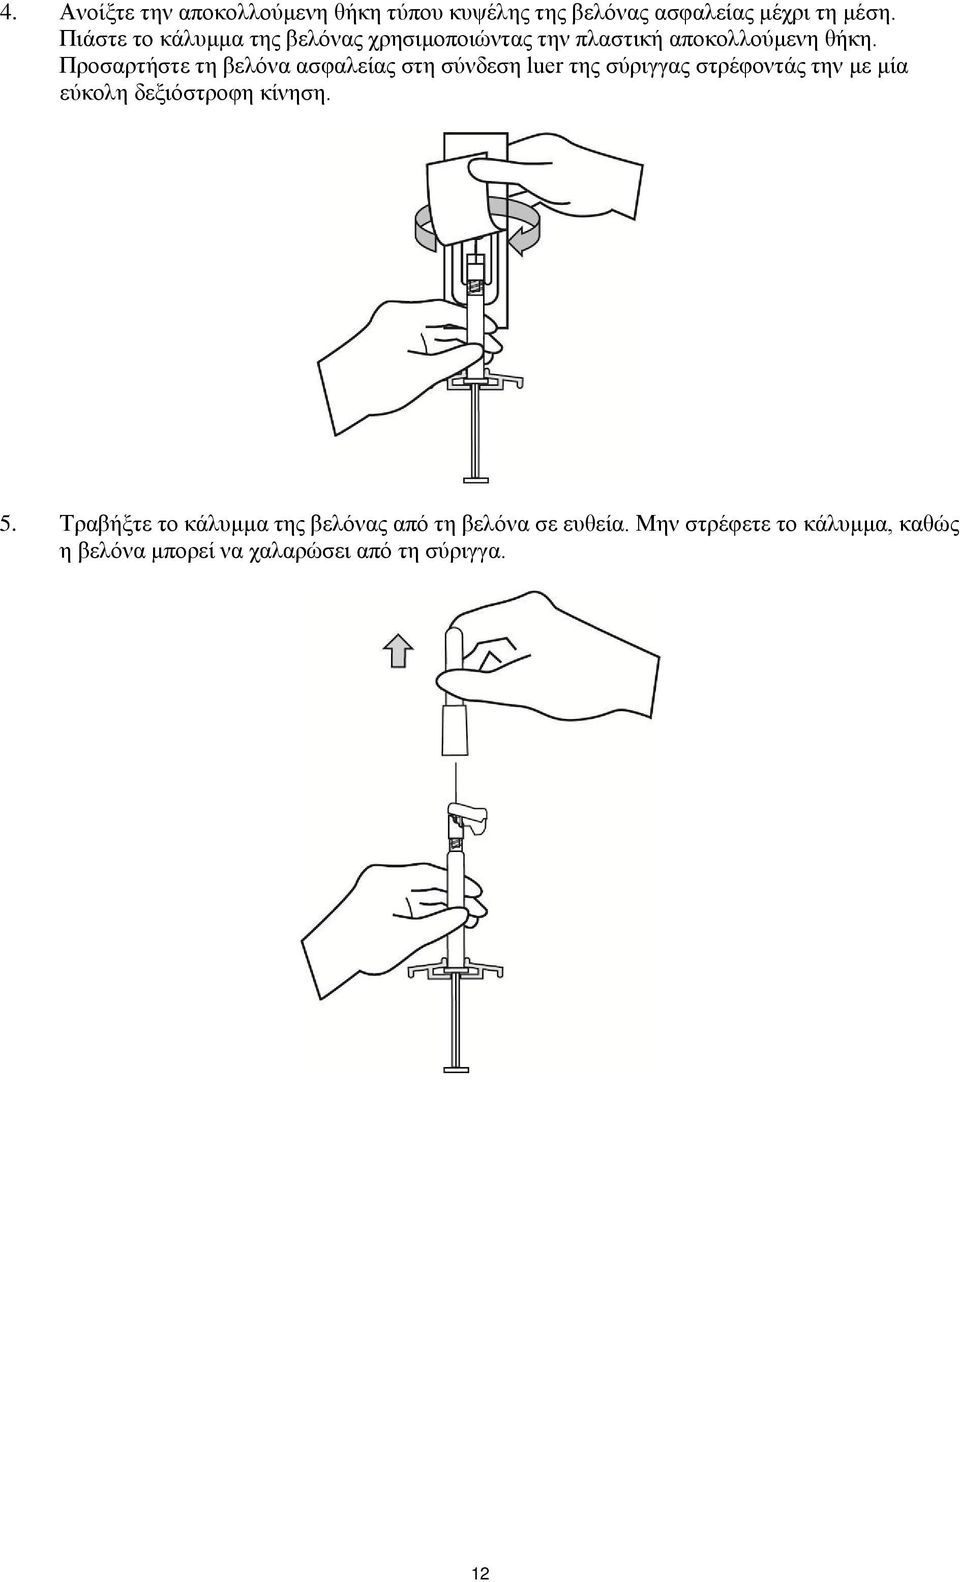 Προσαρτήστε τη βελόνα ασφαλείας στη σύνδεση luer της σύριγγας στρέφοντάς την με μία εύκολη δεξιόστροφη